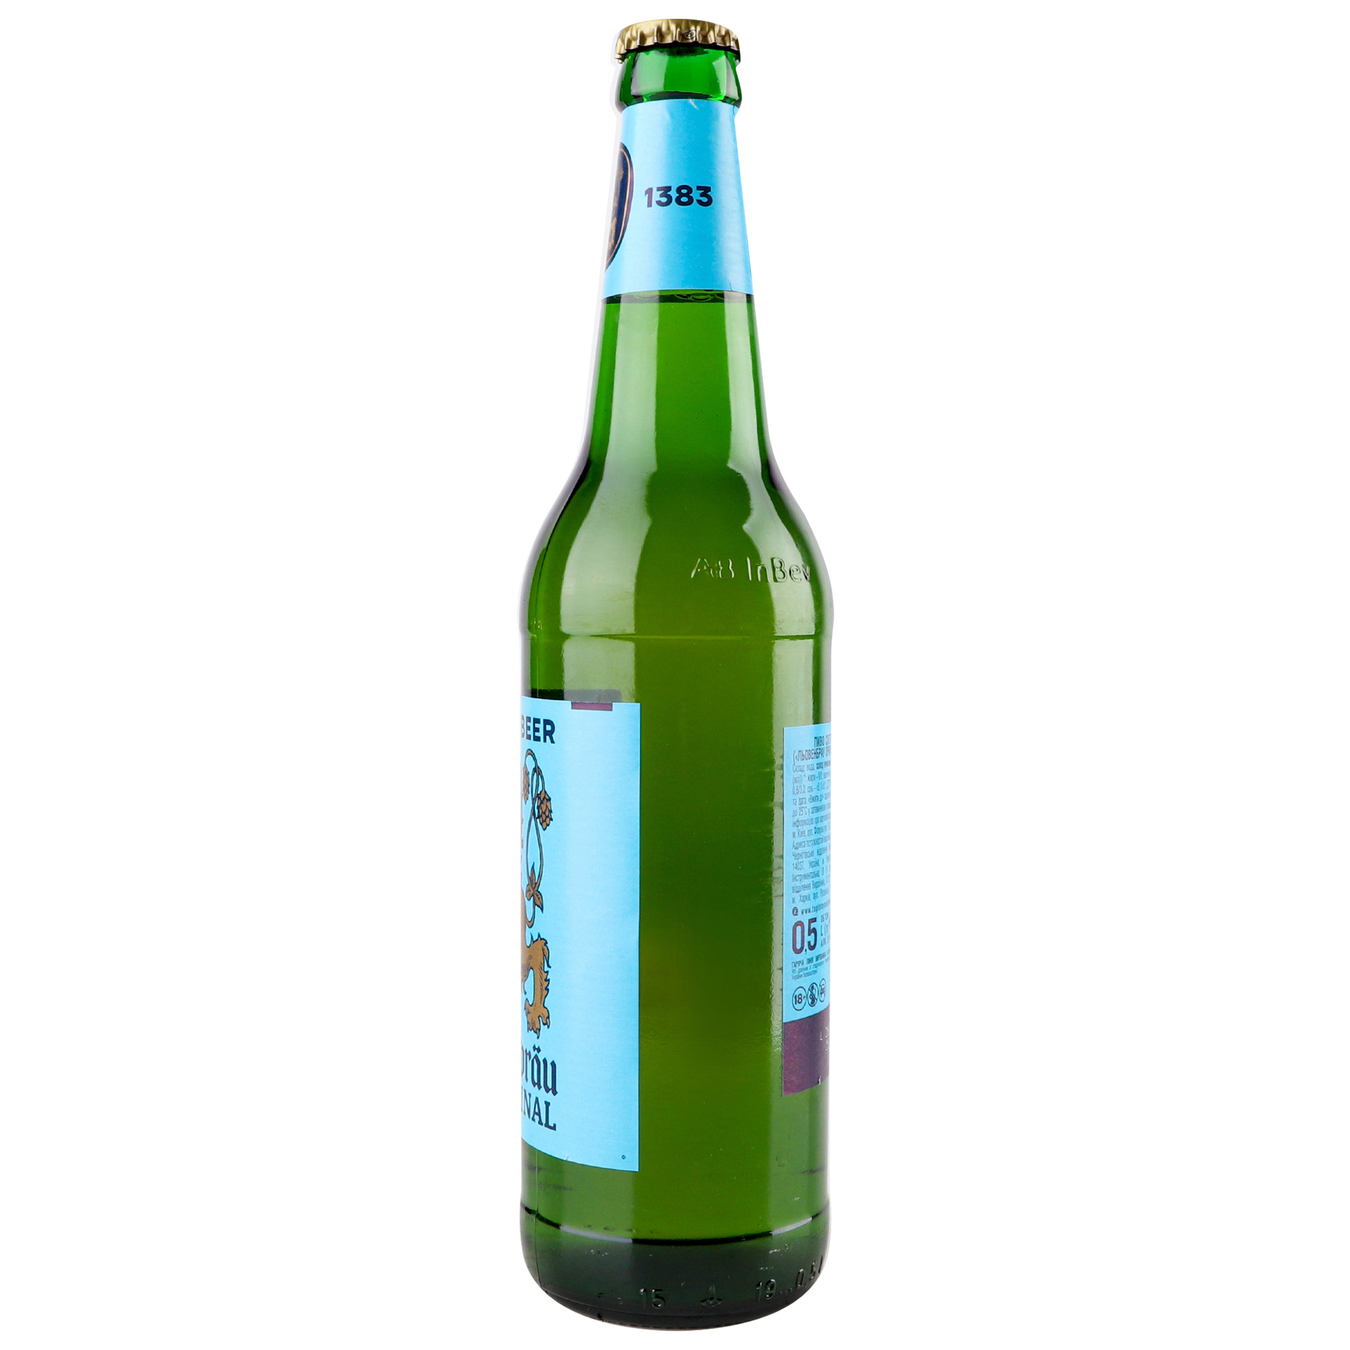 Пиво Lowenbrau Original светлое пастеризованное 5,1% 0,5л стеклянная бутылка 4